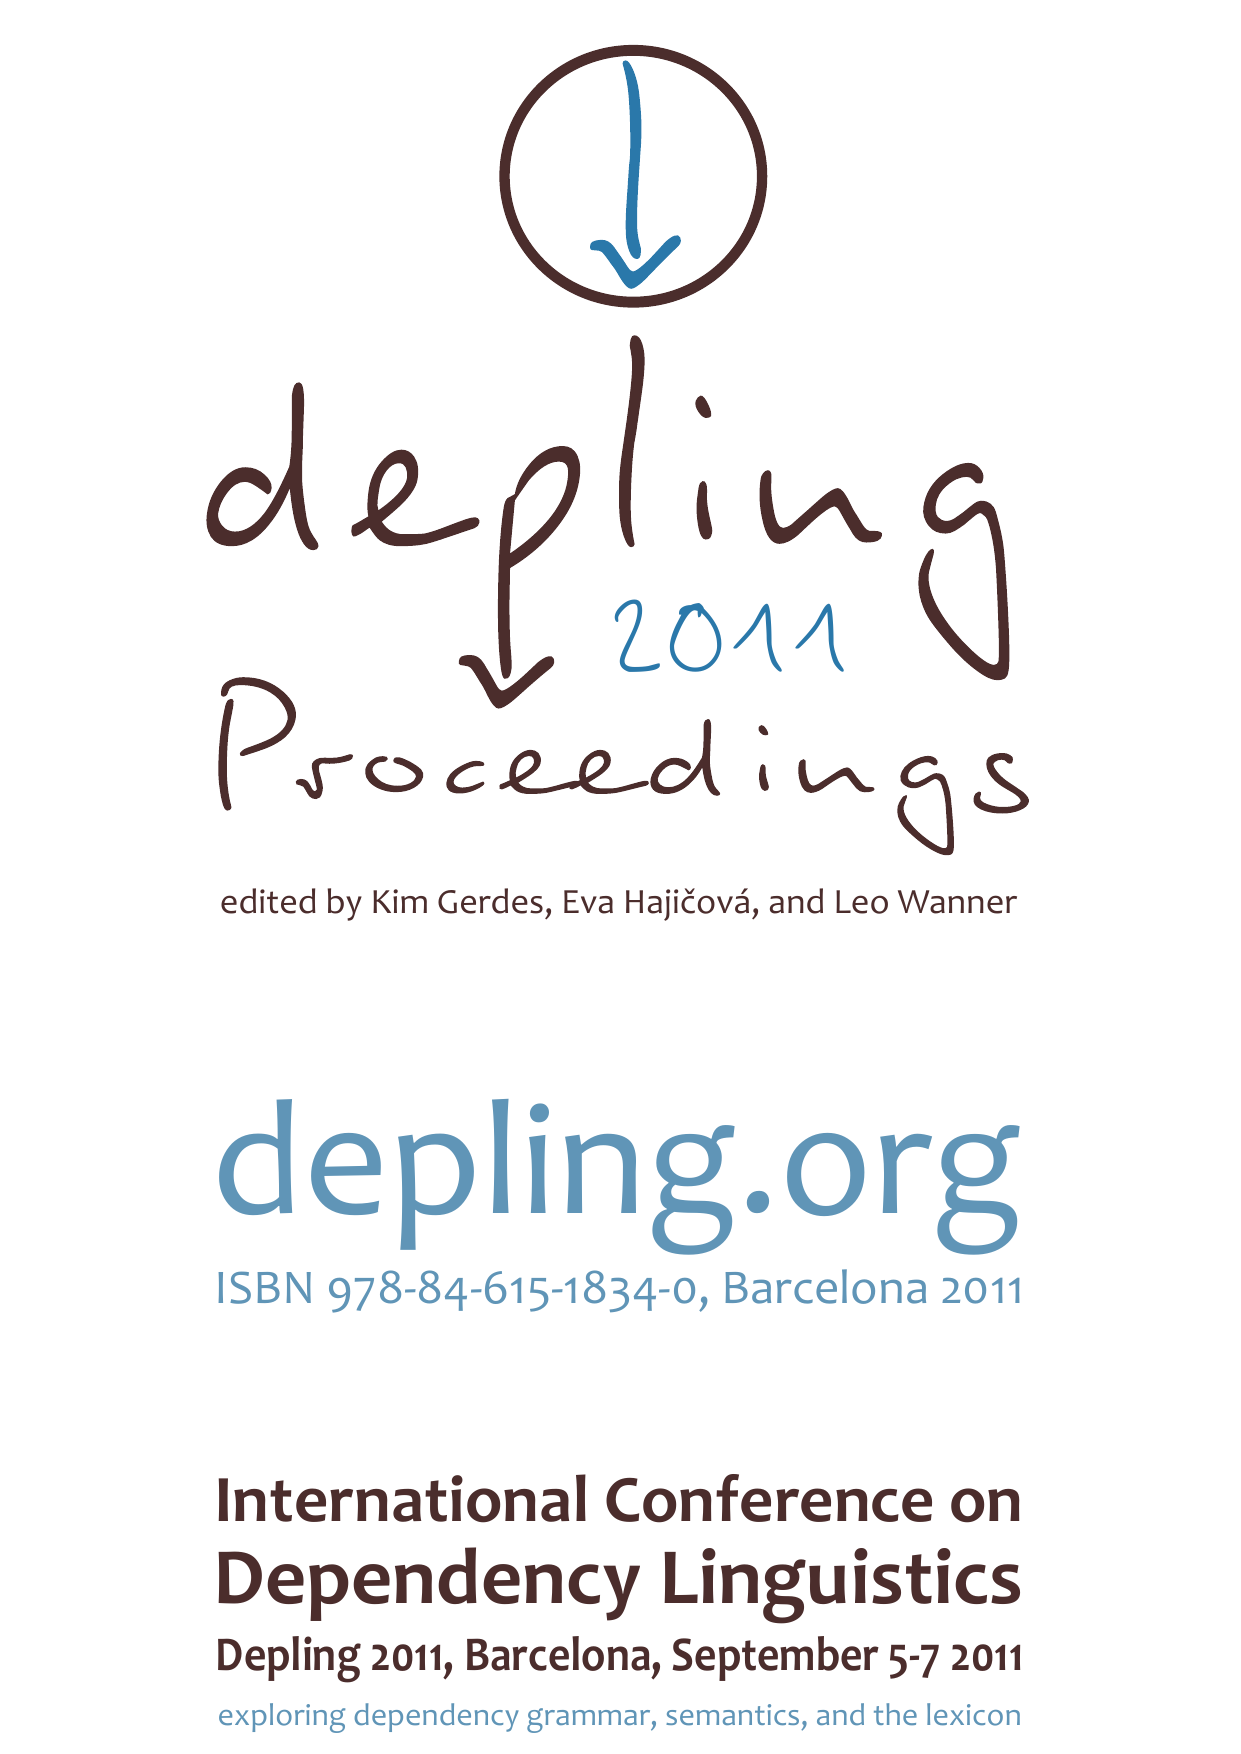 Der er en tendens arkiv Fradrage The complete Proceedings of Depling 2011 as a single PDF file